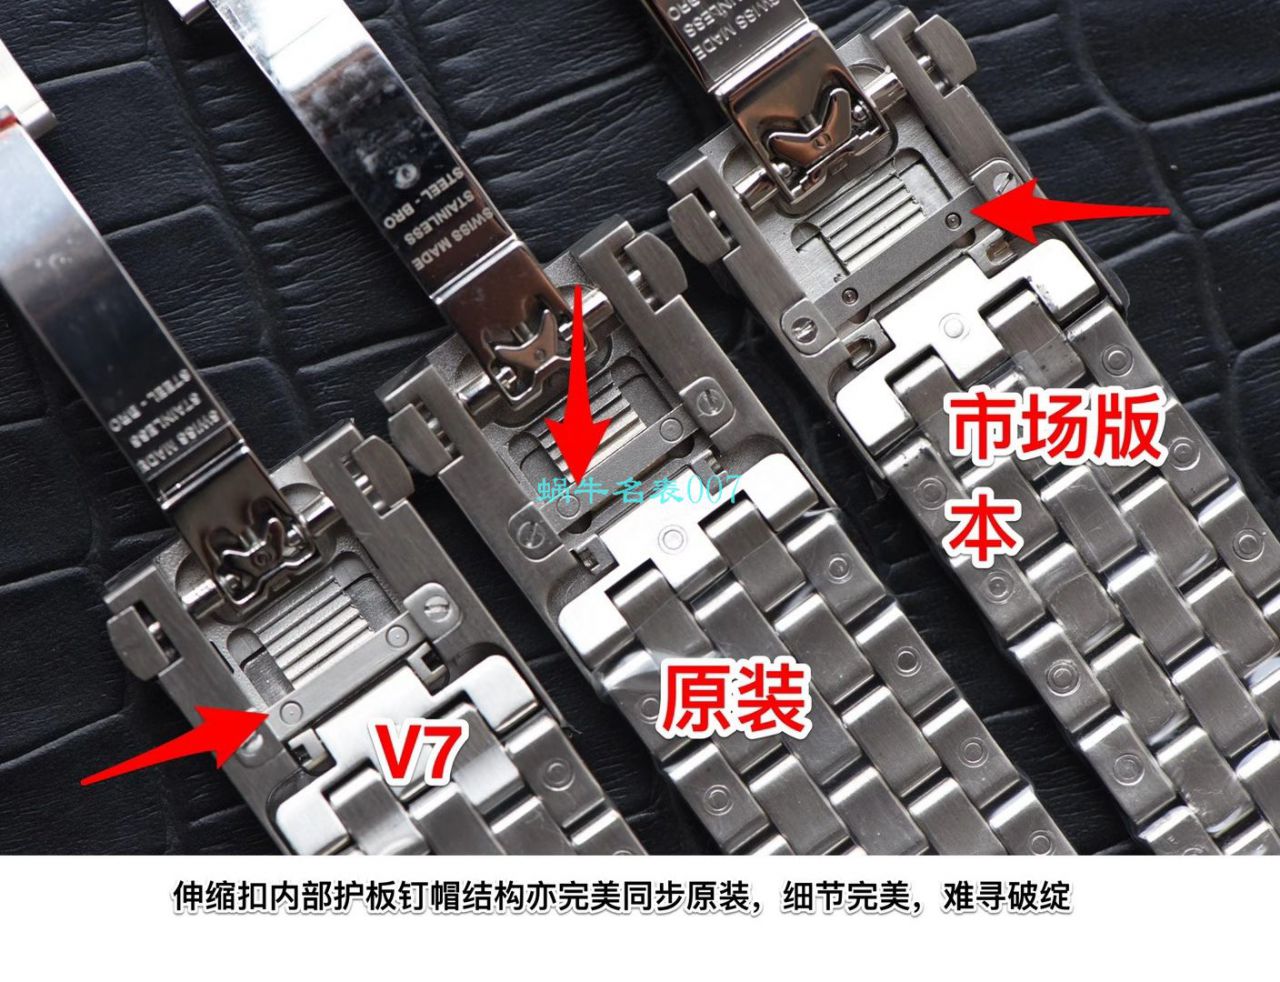 【视频评测】V7厂万国马克十八IW327002超A高仿手表钢带款 / WG579V7